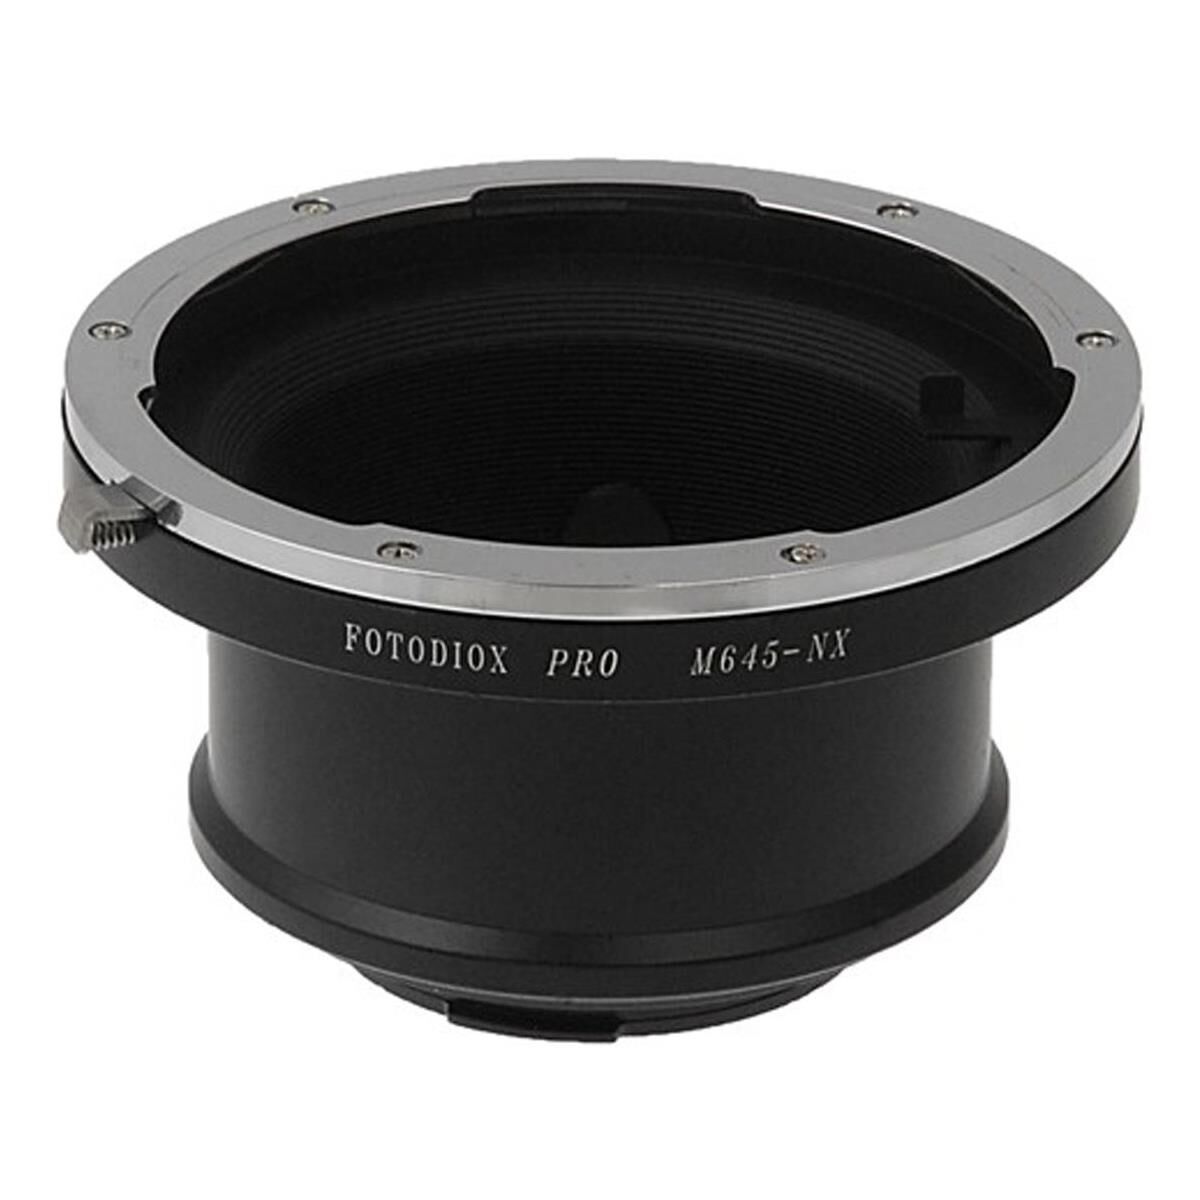 Fotodiox Mount Adapter for Mamiya 645 Lens to Samsung NX Mirrorless Camera